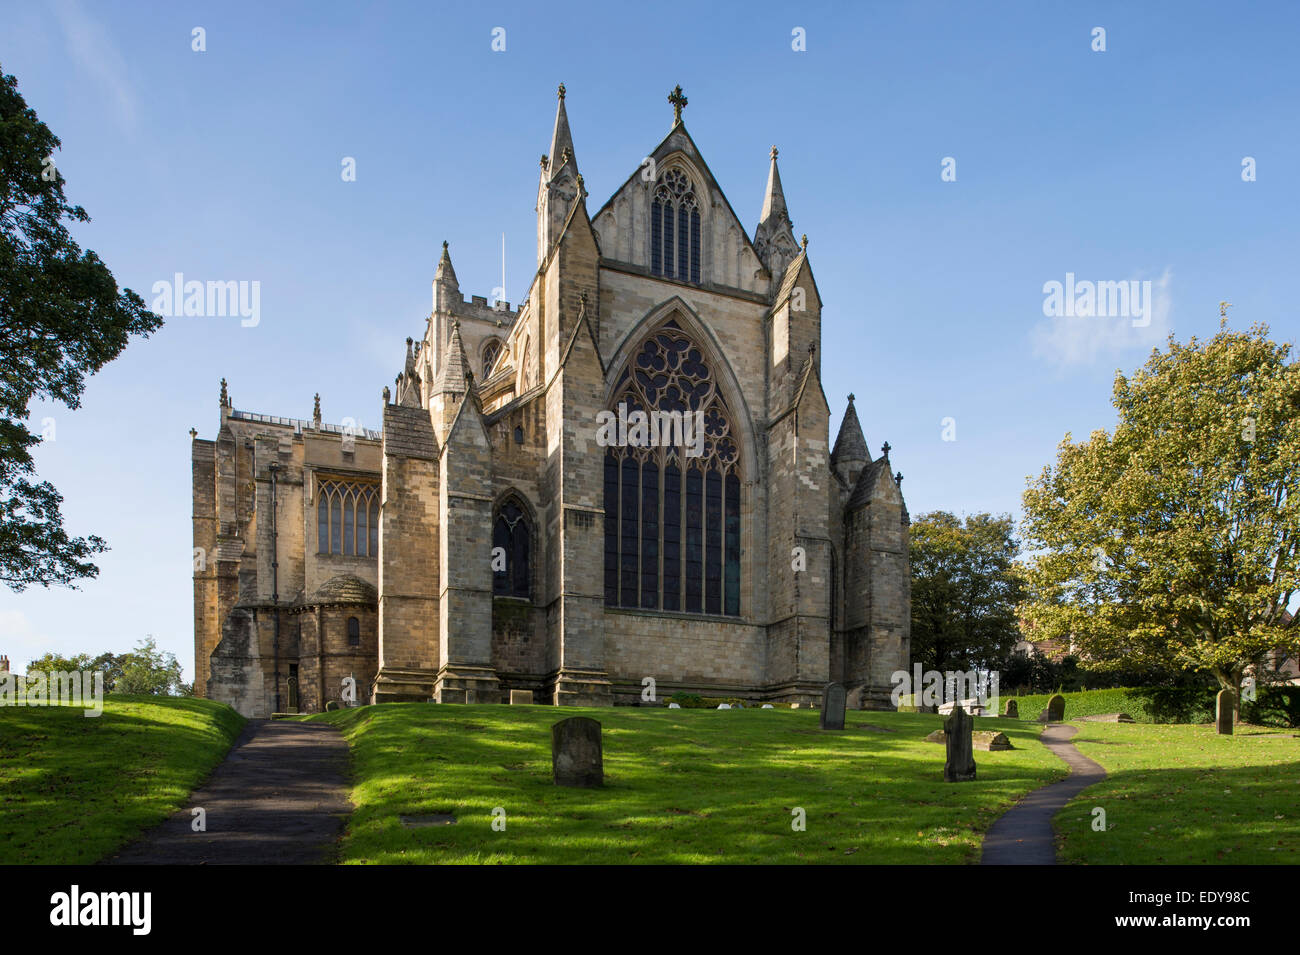 Un faible angle de vue de la façade est de la belle, qui domine, historique, la cathédrale de Ripon ensoleillée sous un ciel bleu - North Yorkshire, Angleterre, Royaume-Uni. Banque D'Images